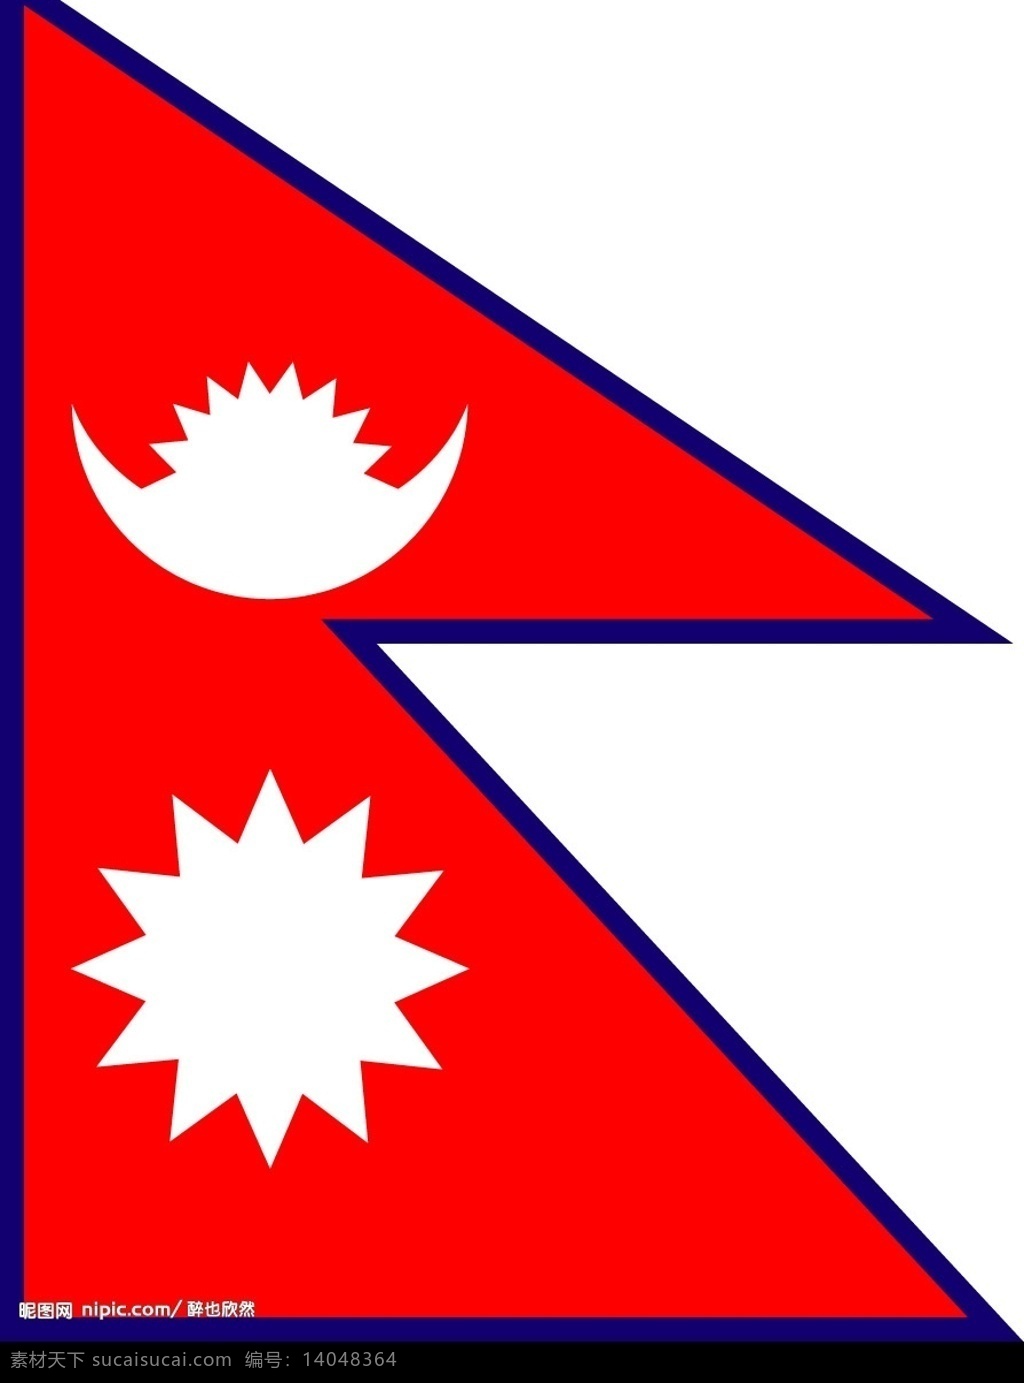 尼泊尔国旗 标识标志图标 公共标识标志 世界各国国旗 矢量图库